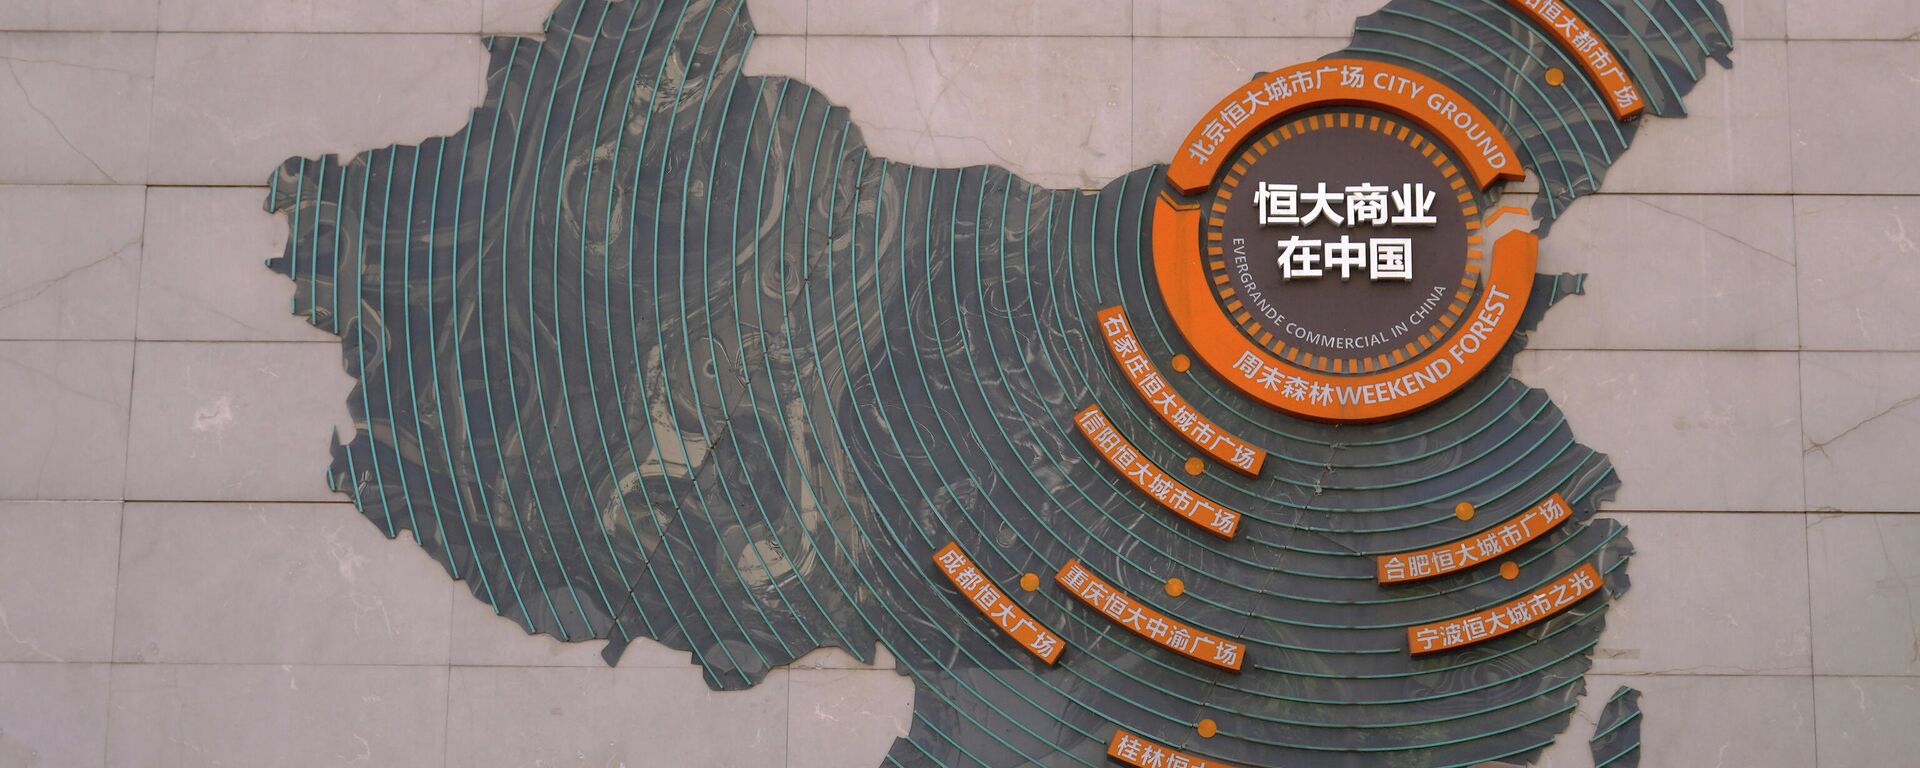 Sede de Evergrande en Pekín (China) - Sputnik Mundo, 1920, 22.09.2021